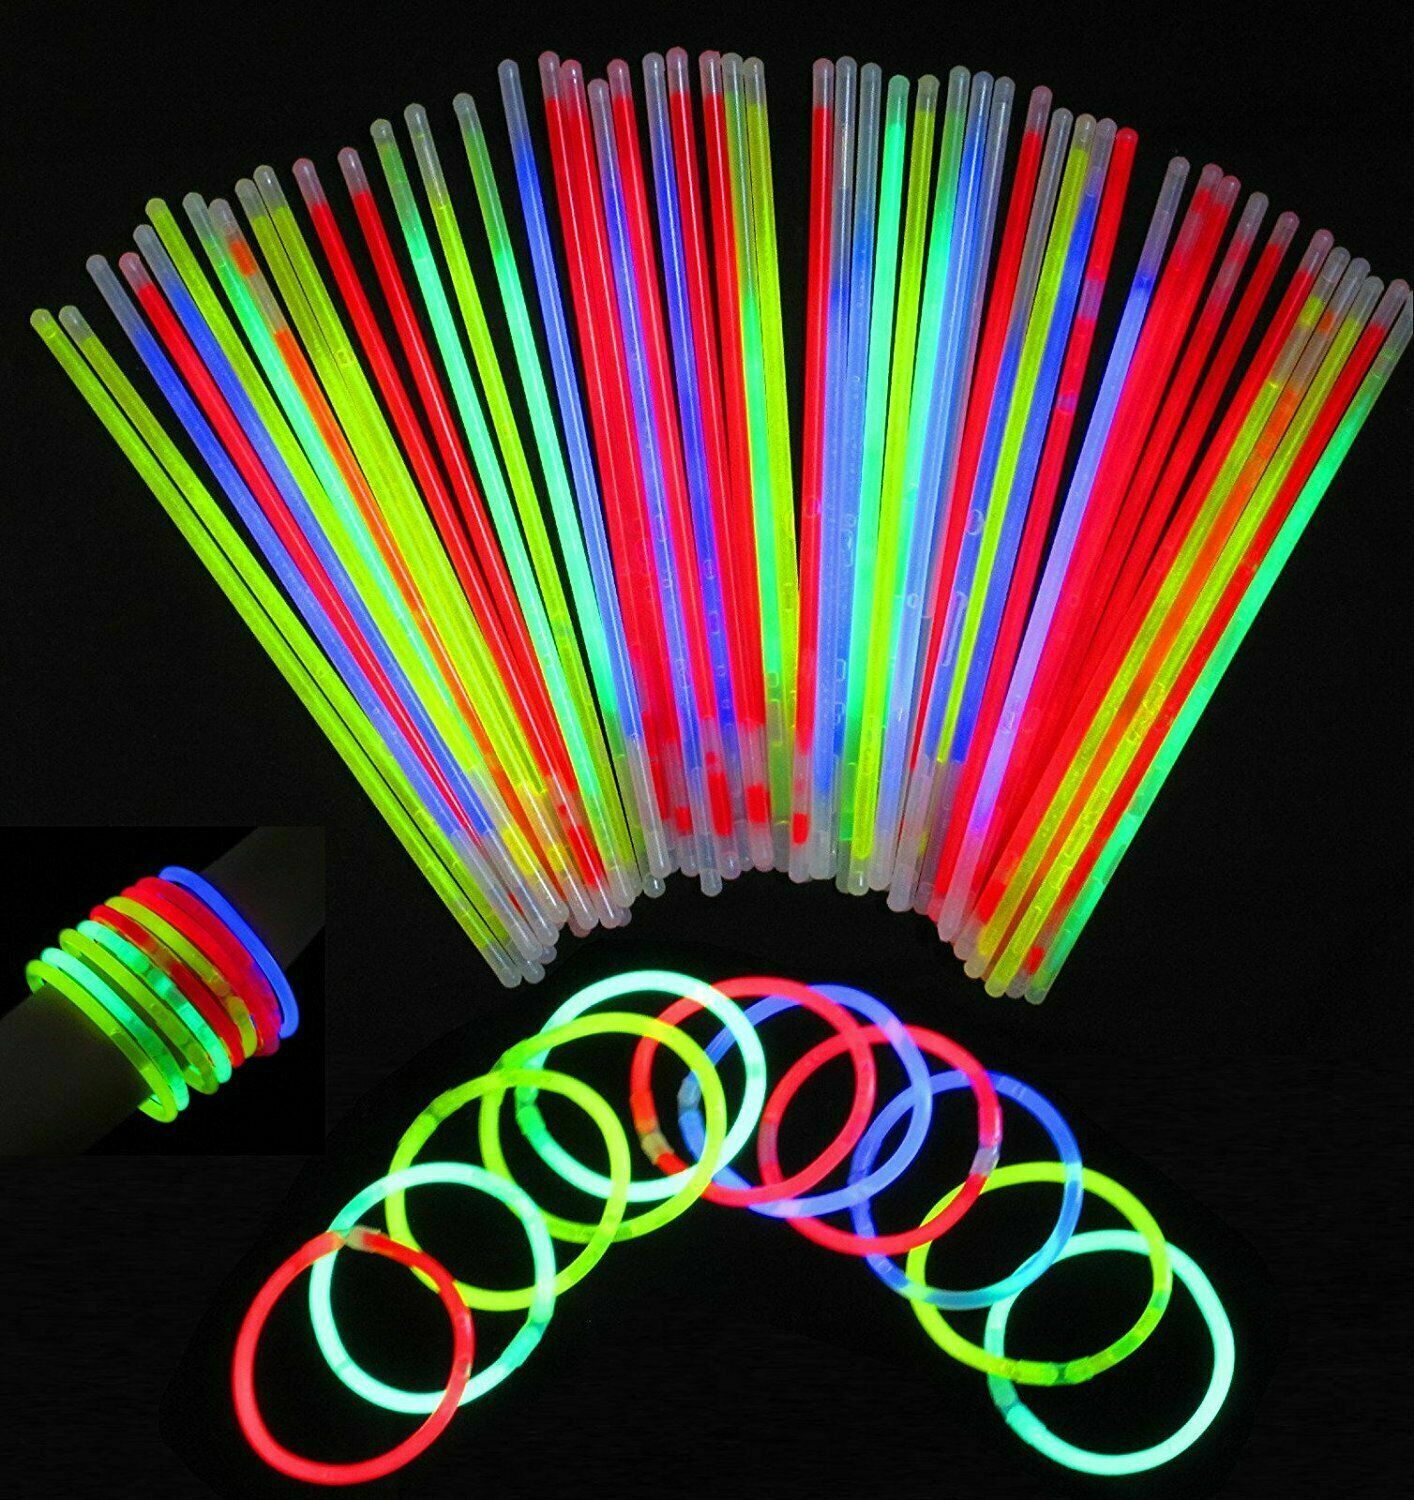 100 Glow Sticks UV Light Sticks Bracelets Party Favors Neon Color Connectors UK